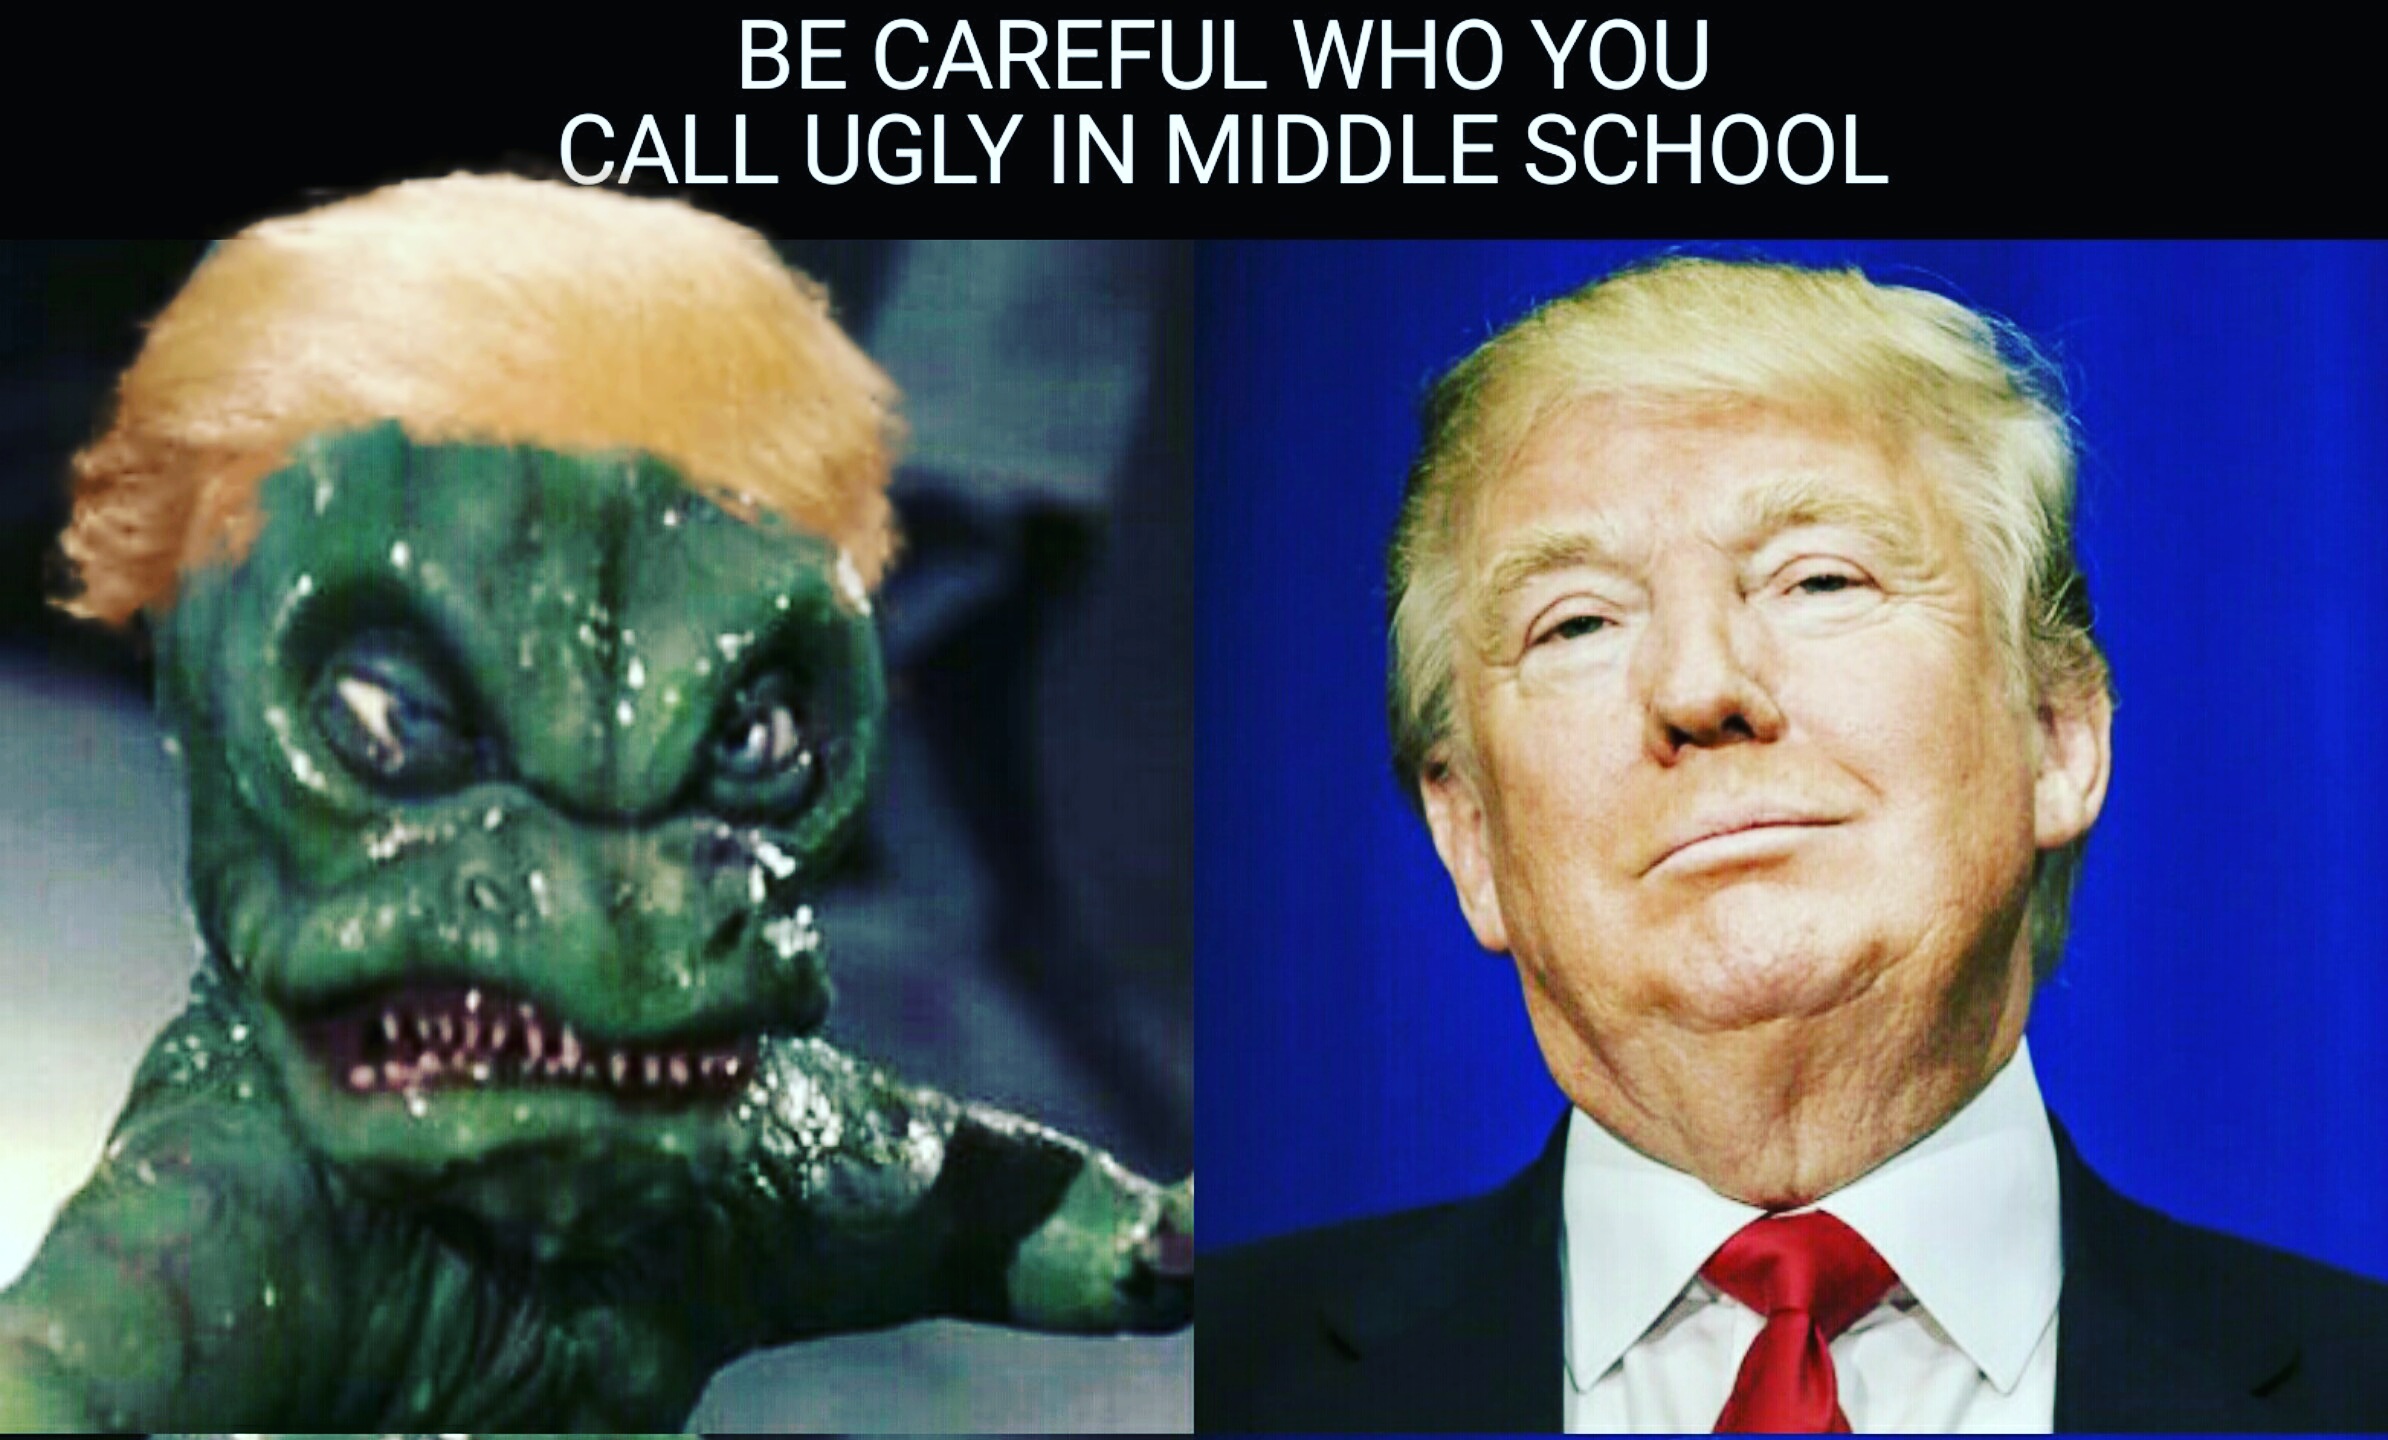 Trump is an Alien Lizard